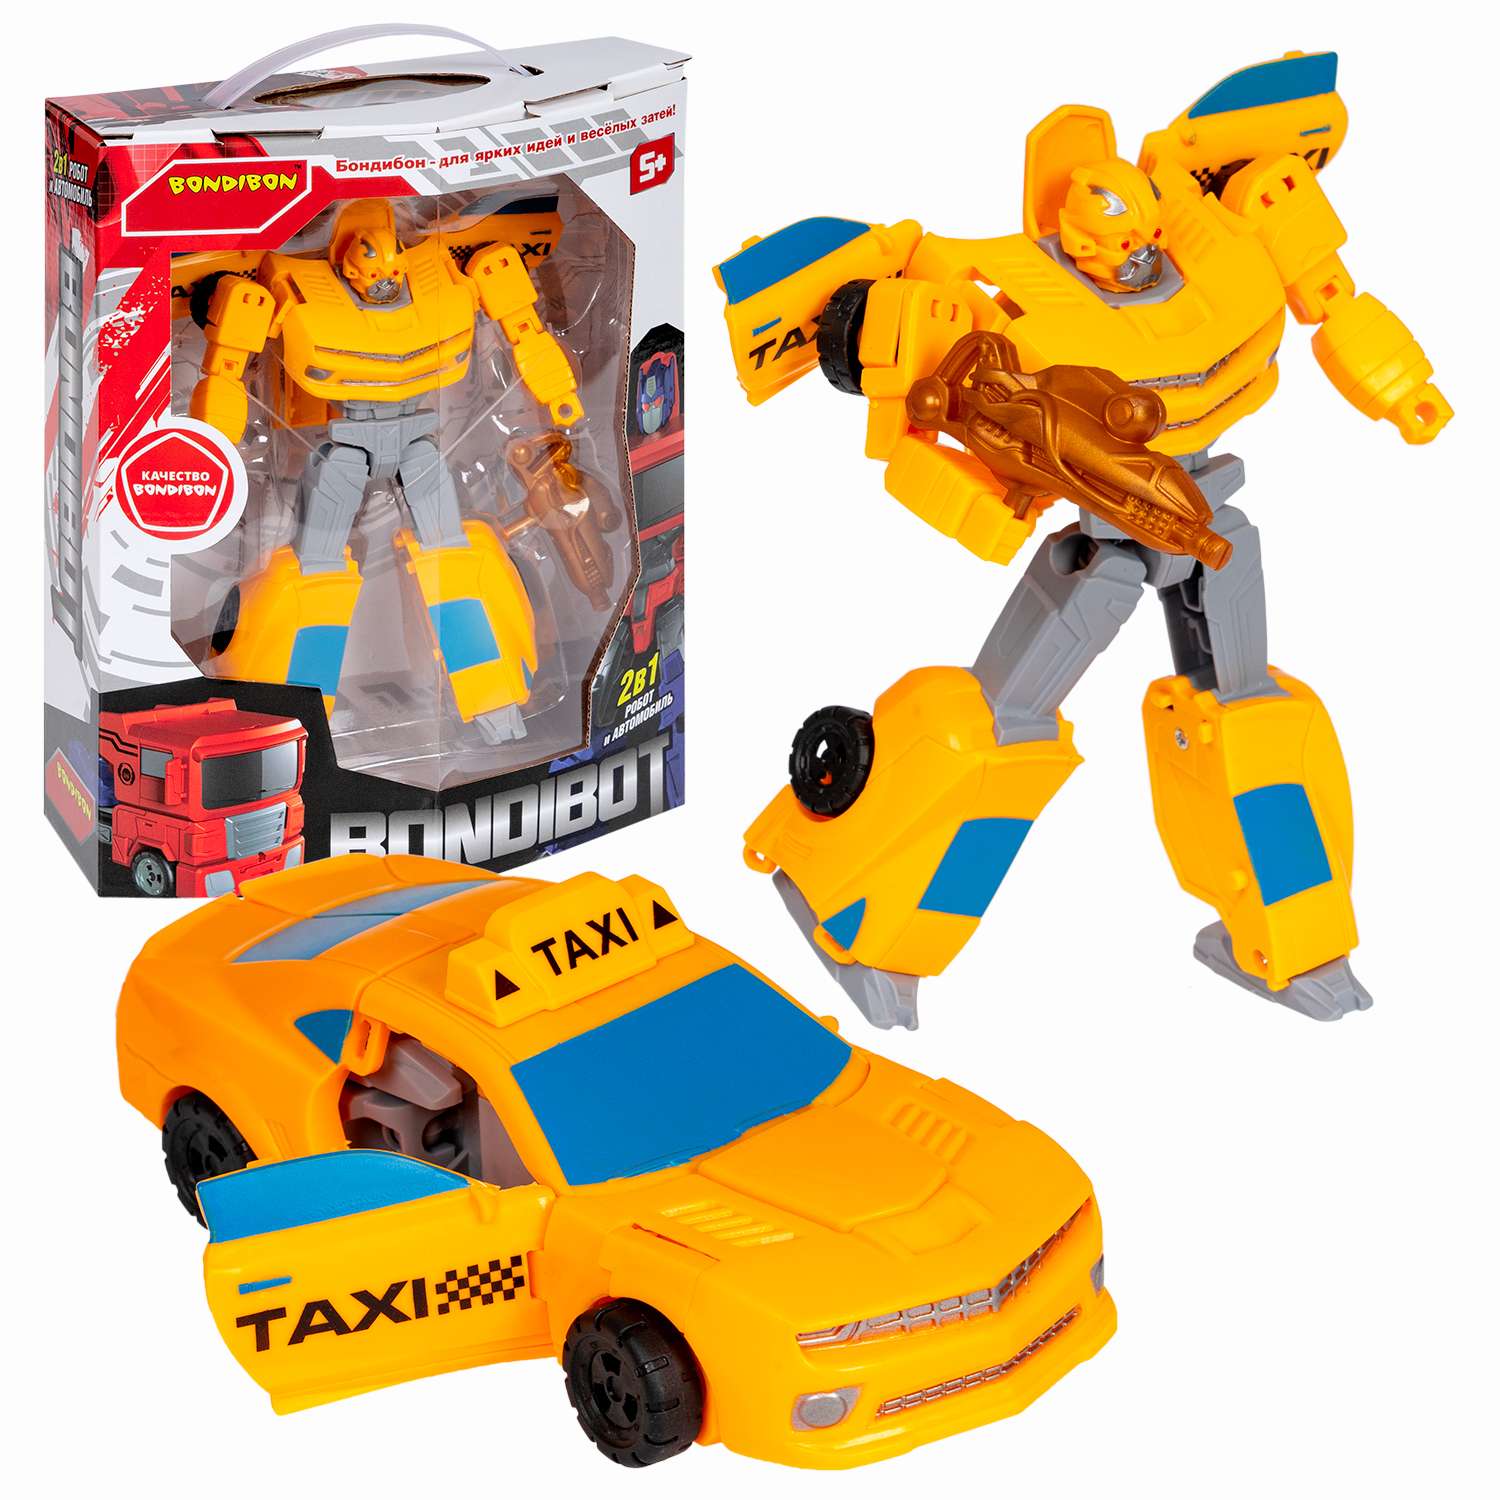 Трансформер BONDIBON Bondibot Робот-автомобиль такси 2 в 1 жёлтого цвета - фото 1